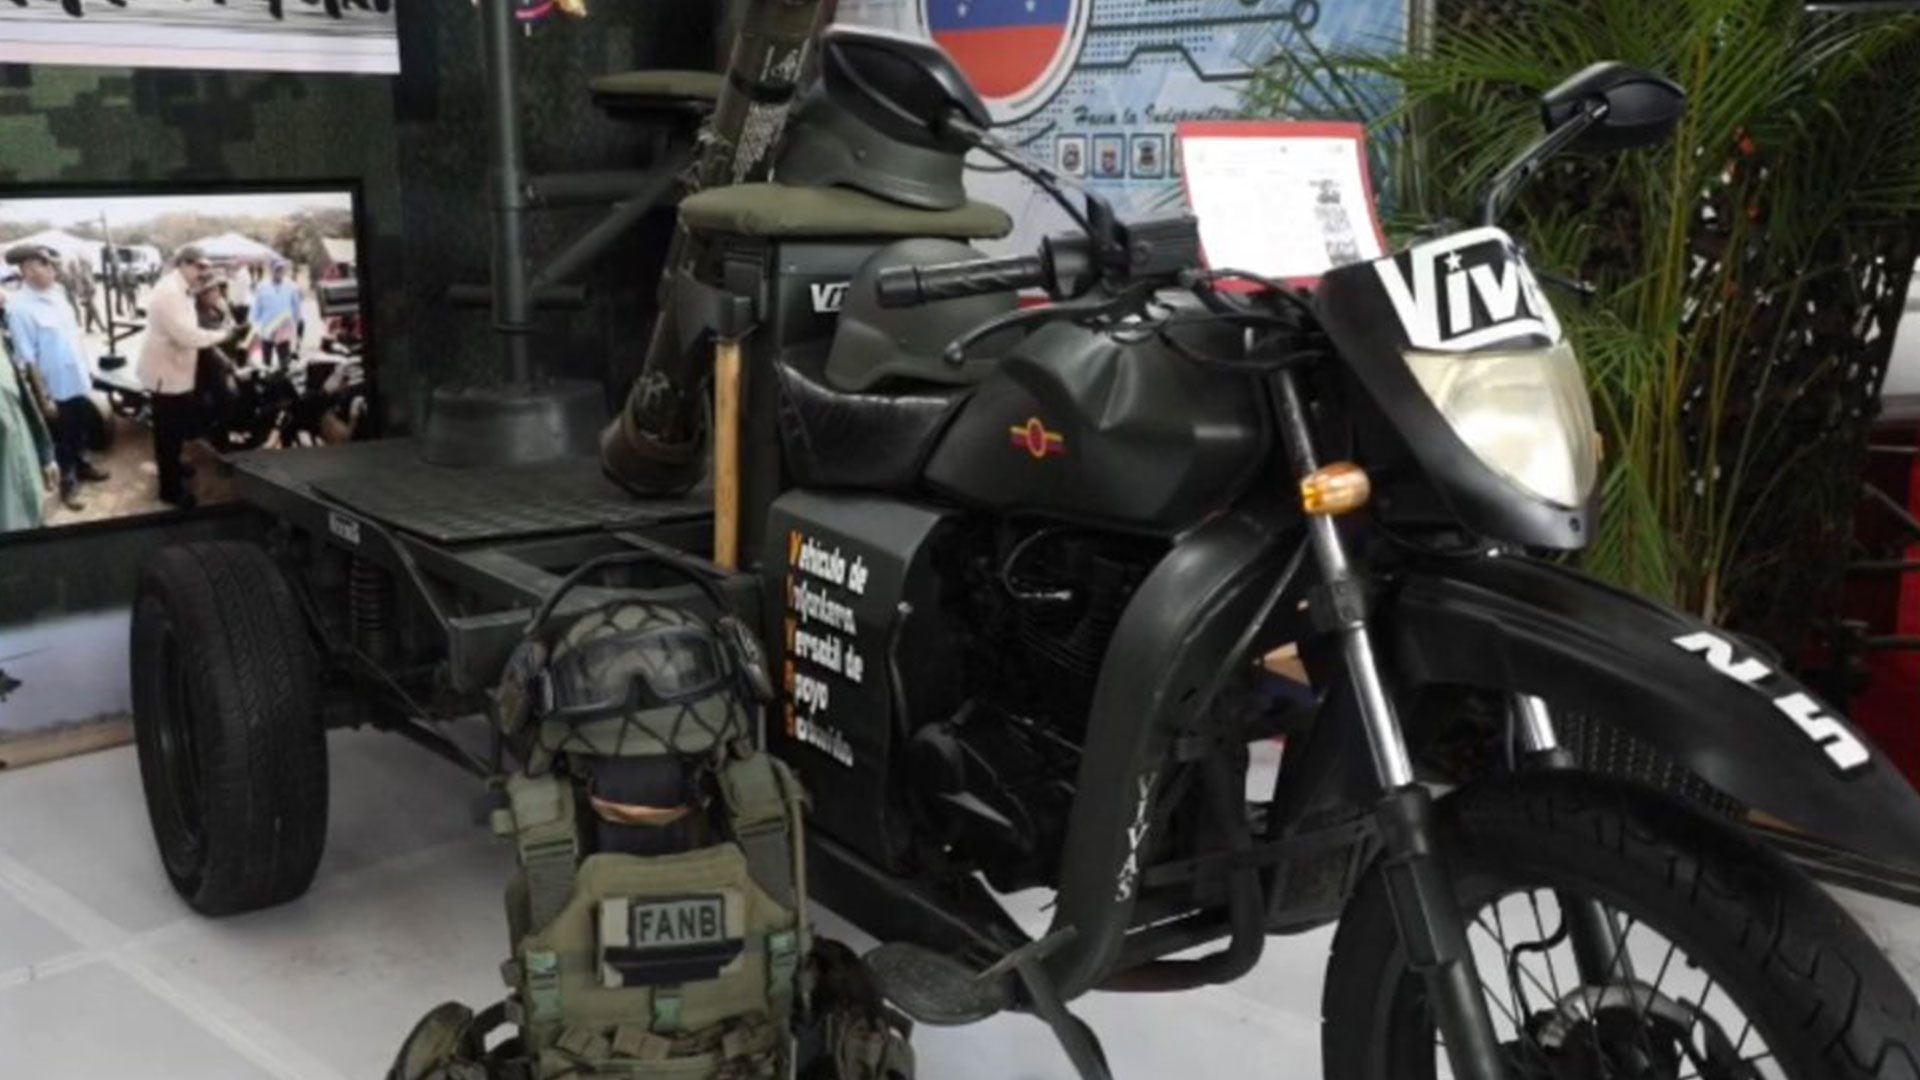 El VIVAS fue desarrollo con material de deshecho y está compuesto por una motocicleta y una plataforma en su parte trasera